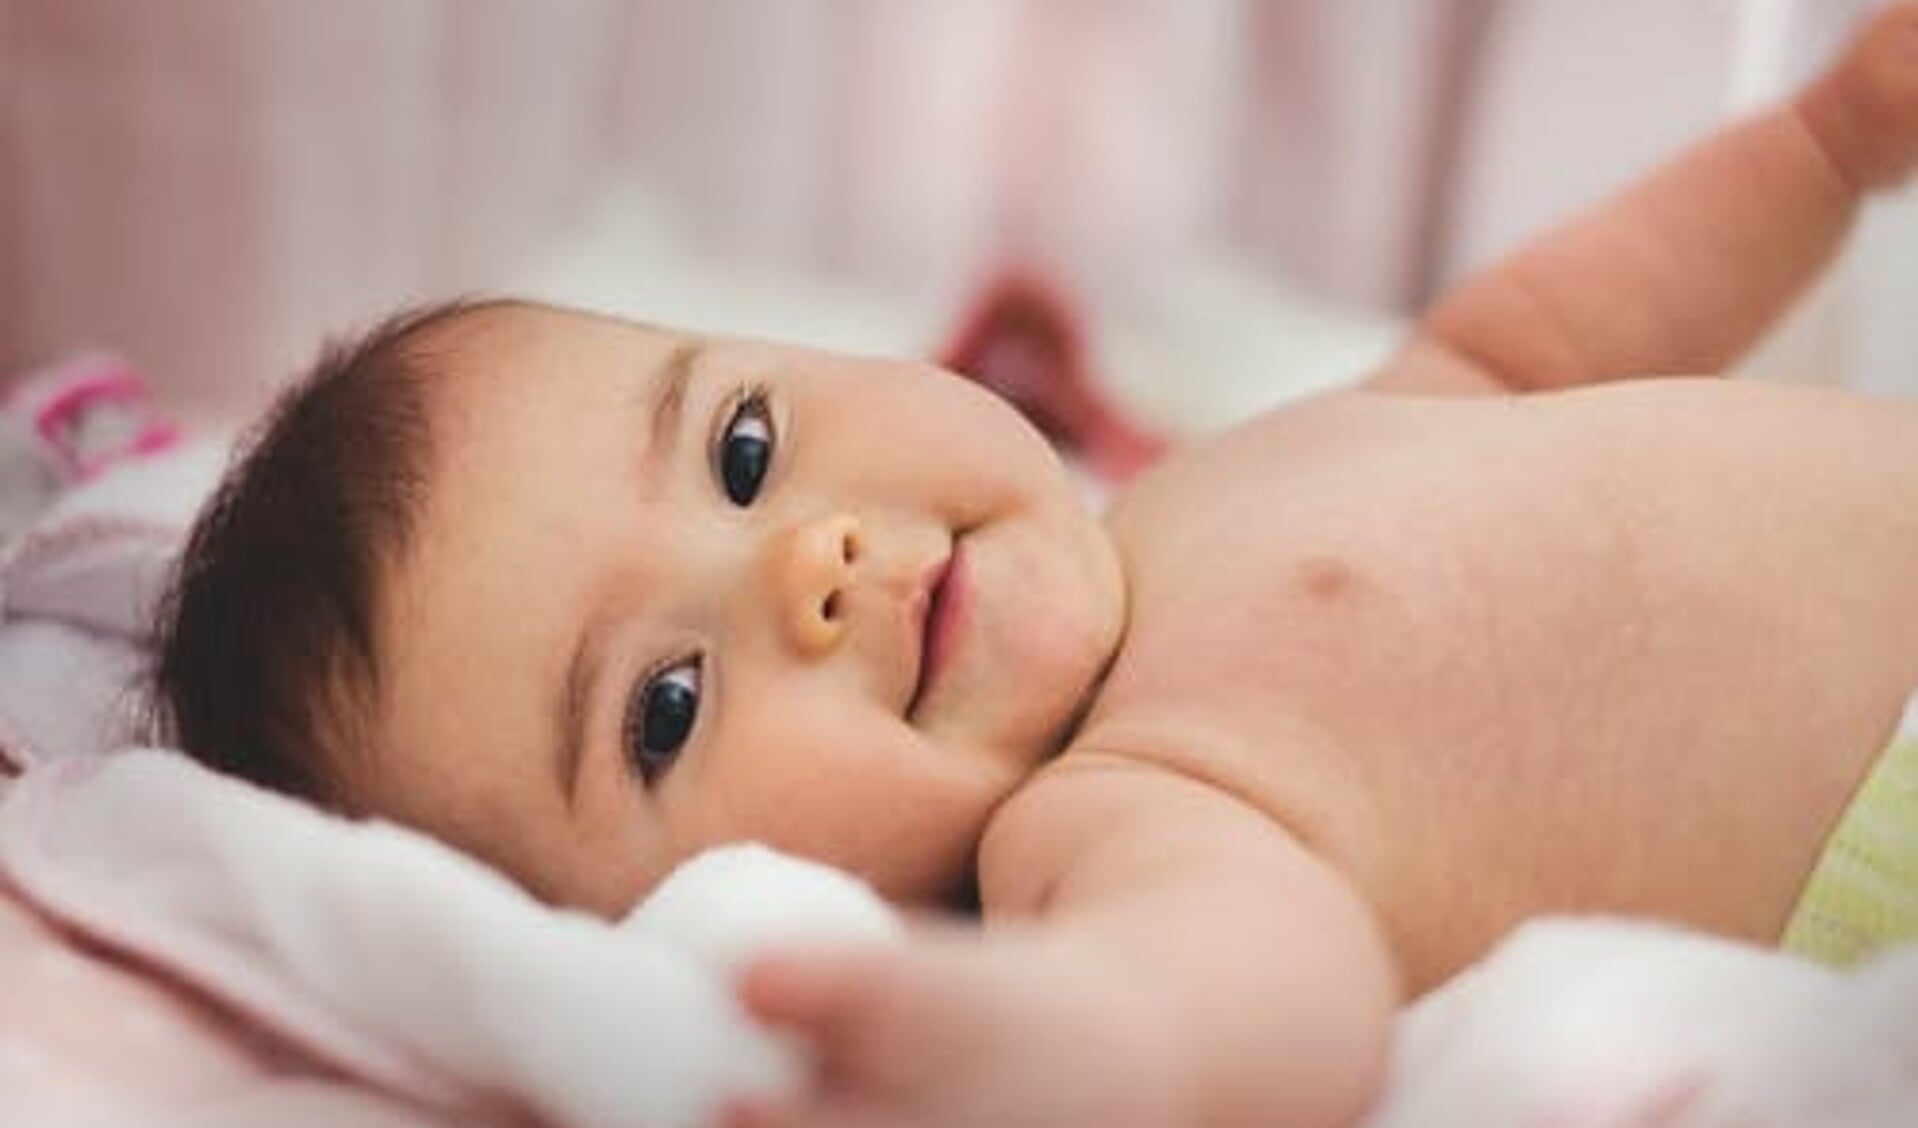 is jouw baby geboren in 2021? Wat is zijn of haar naam? Stuur een leuke foto met naam naar onze redactie.